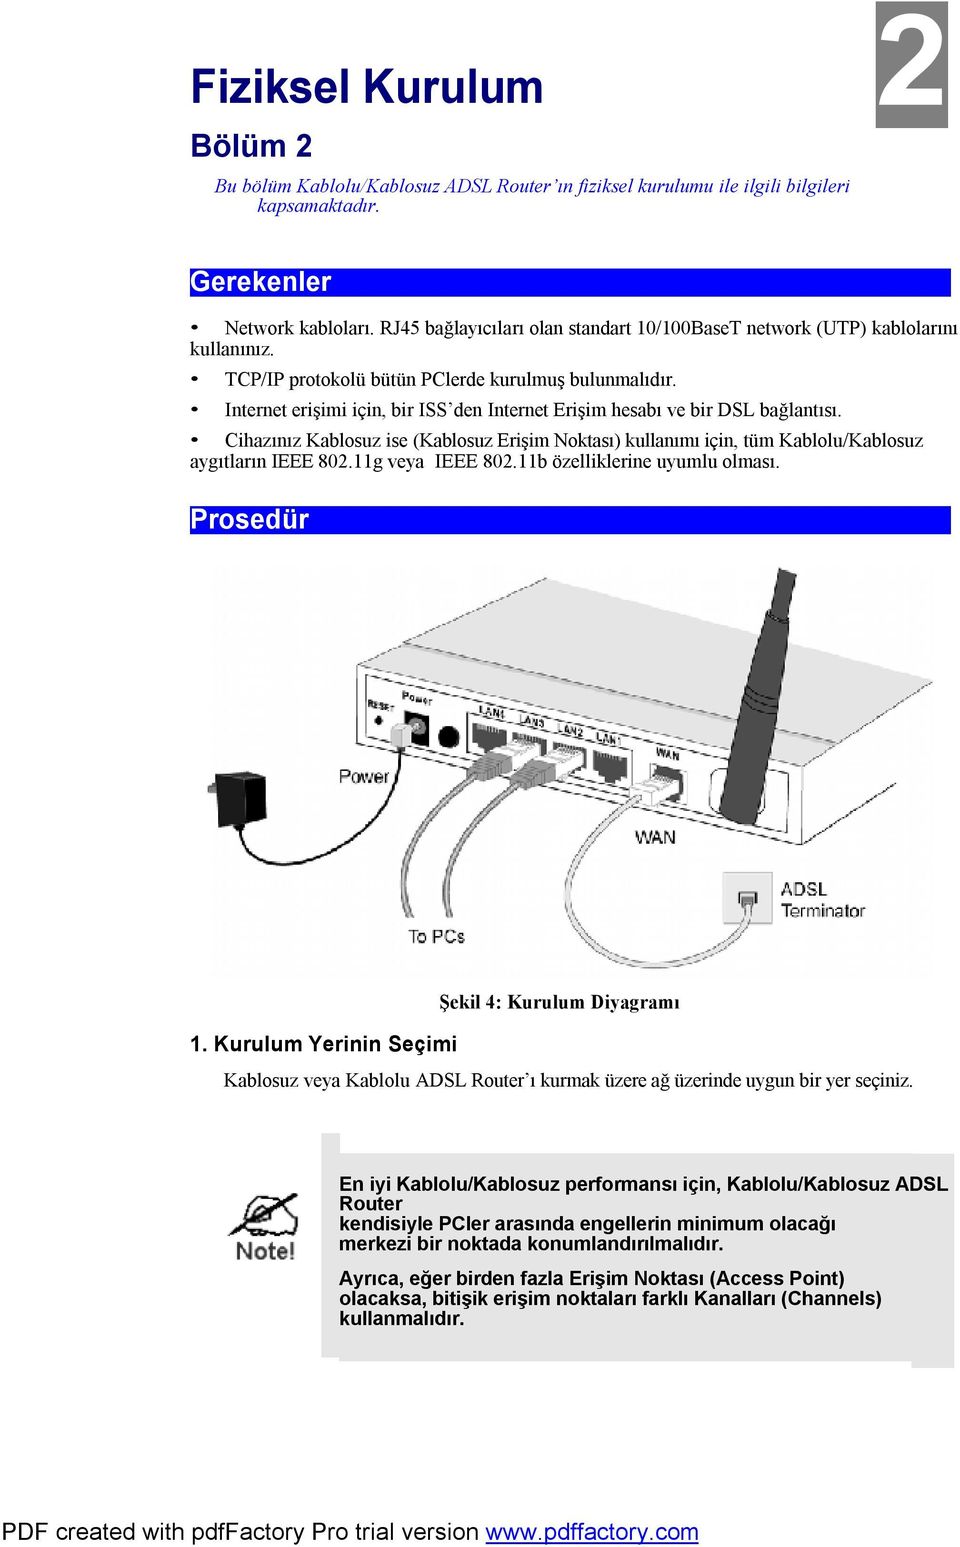 Internet erişimi için, bir ISS den Internet Erişim hesabı ve bir DSL bağlantısı. Cihazınız Kablosuz ise (Kablosuz Erişim Noktası) kullanımı için, tüm Kablolu/Kablosuz aygıtların IEEE 802.